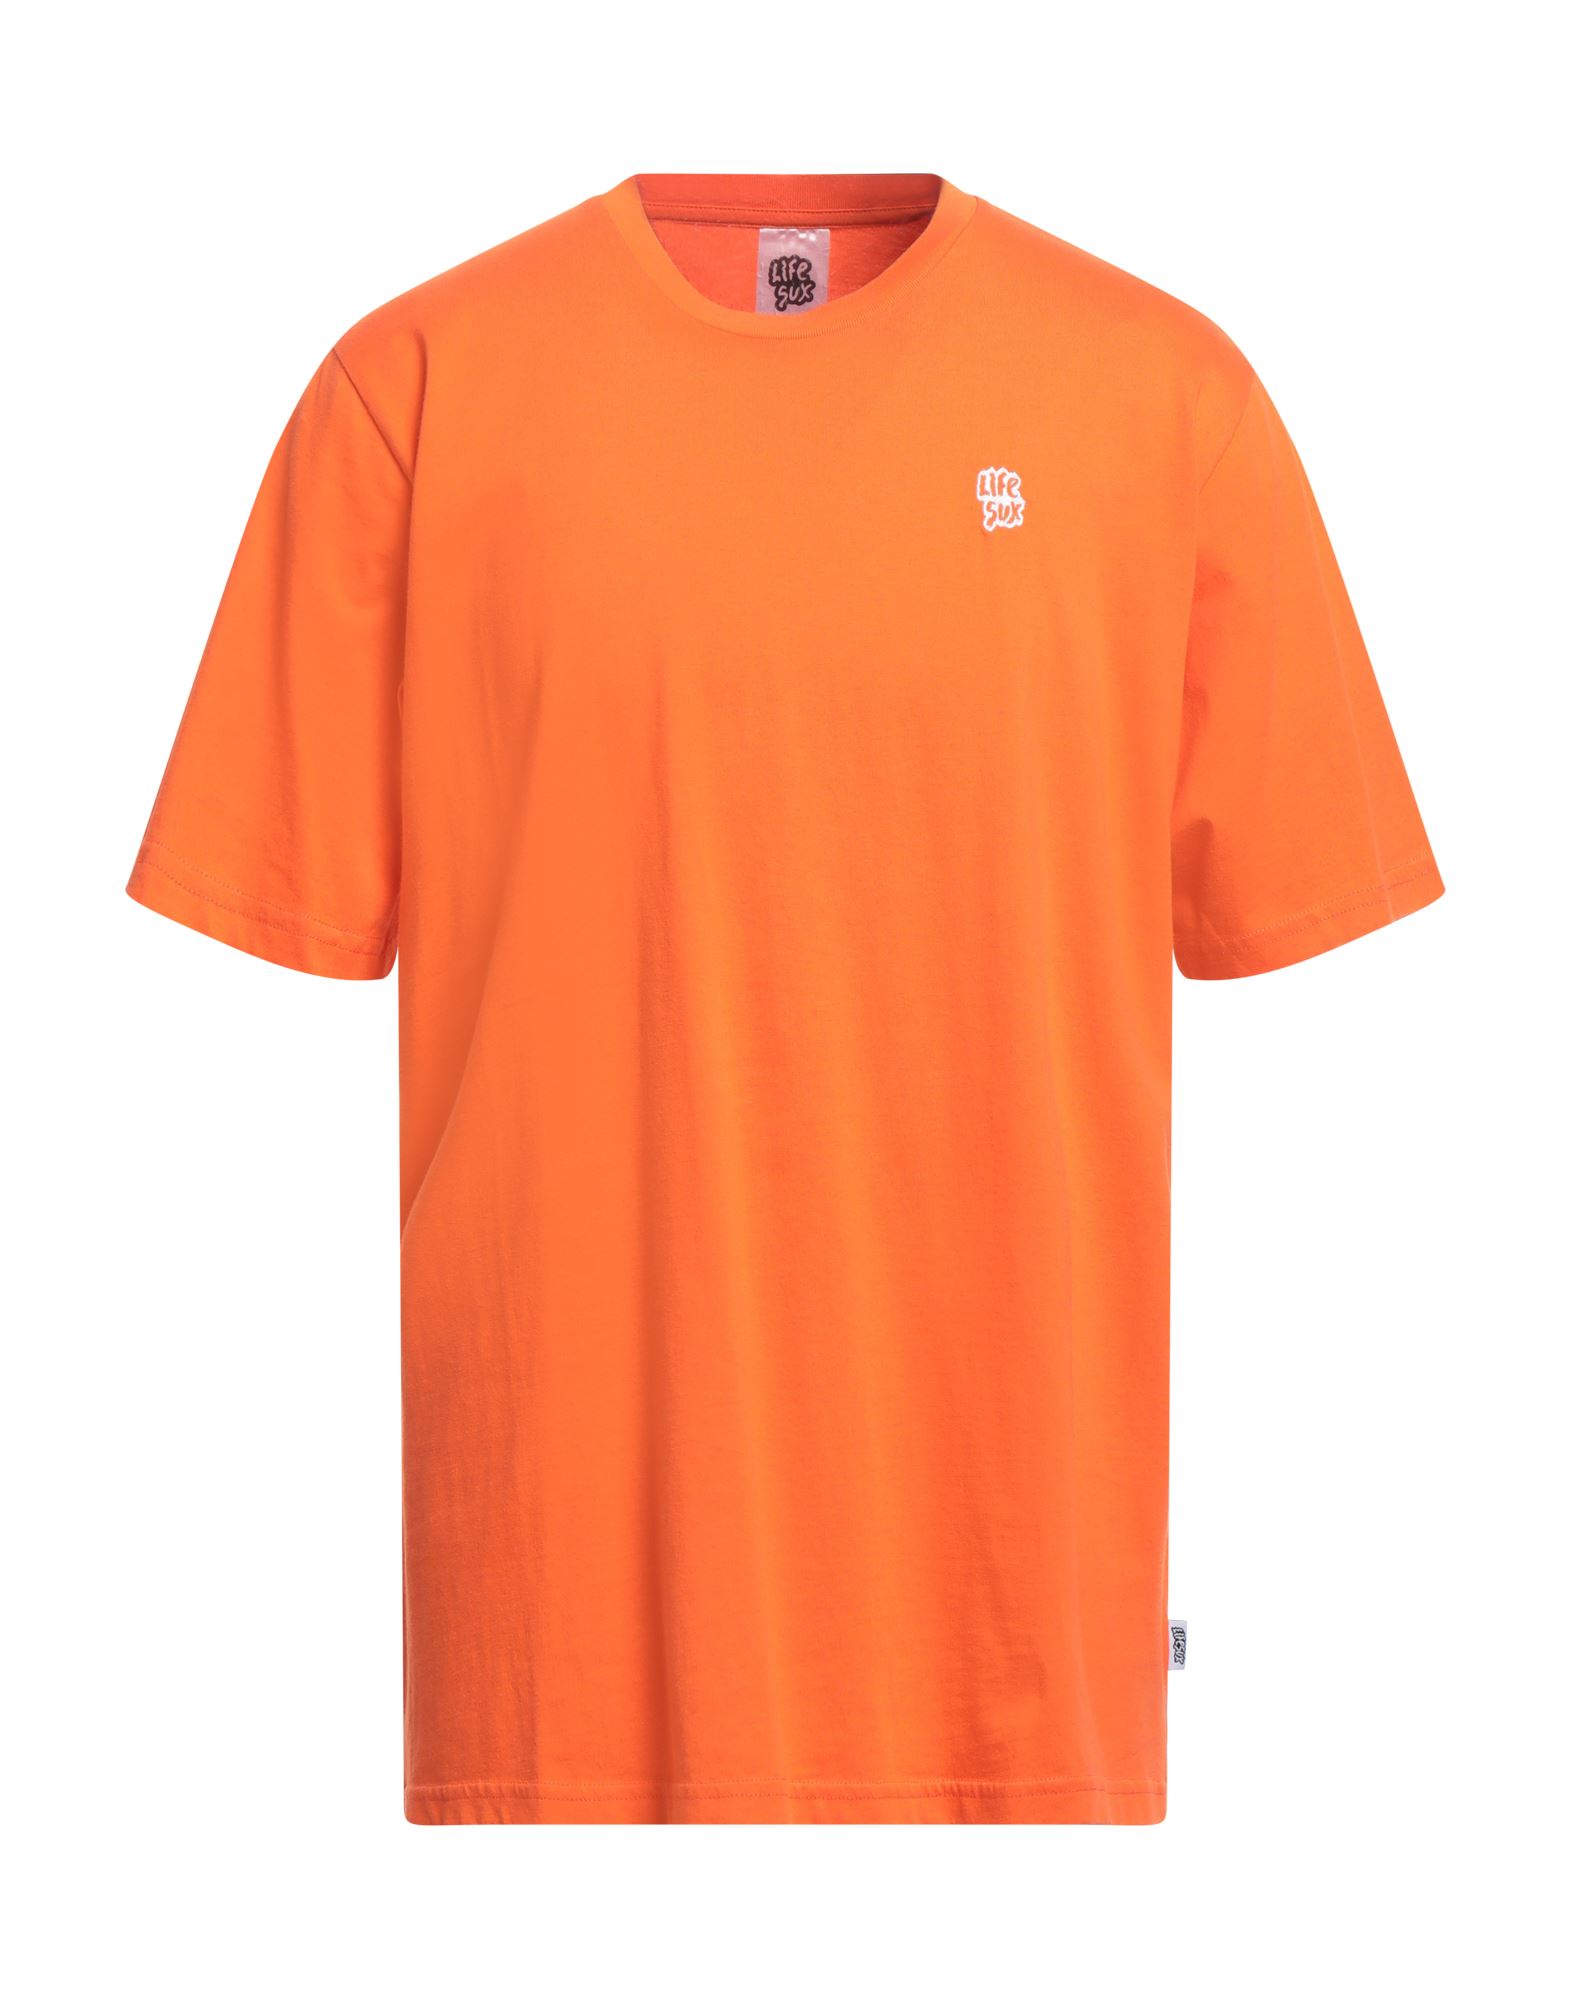 LIFE SUX T-shirts Herren Orange von LIFE SUX